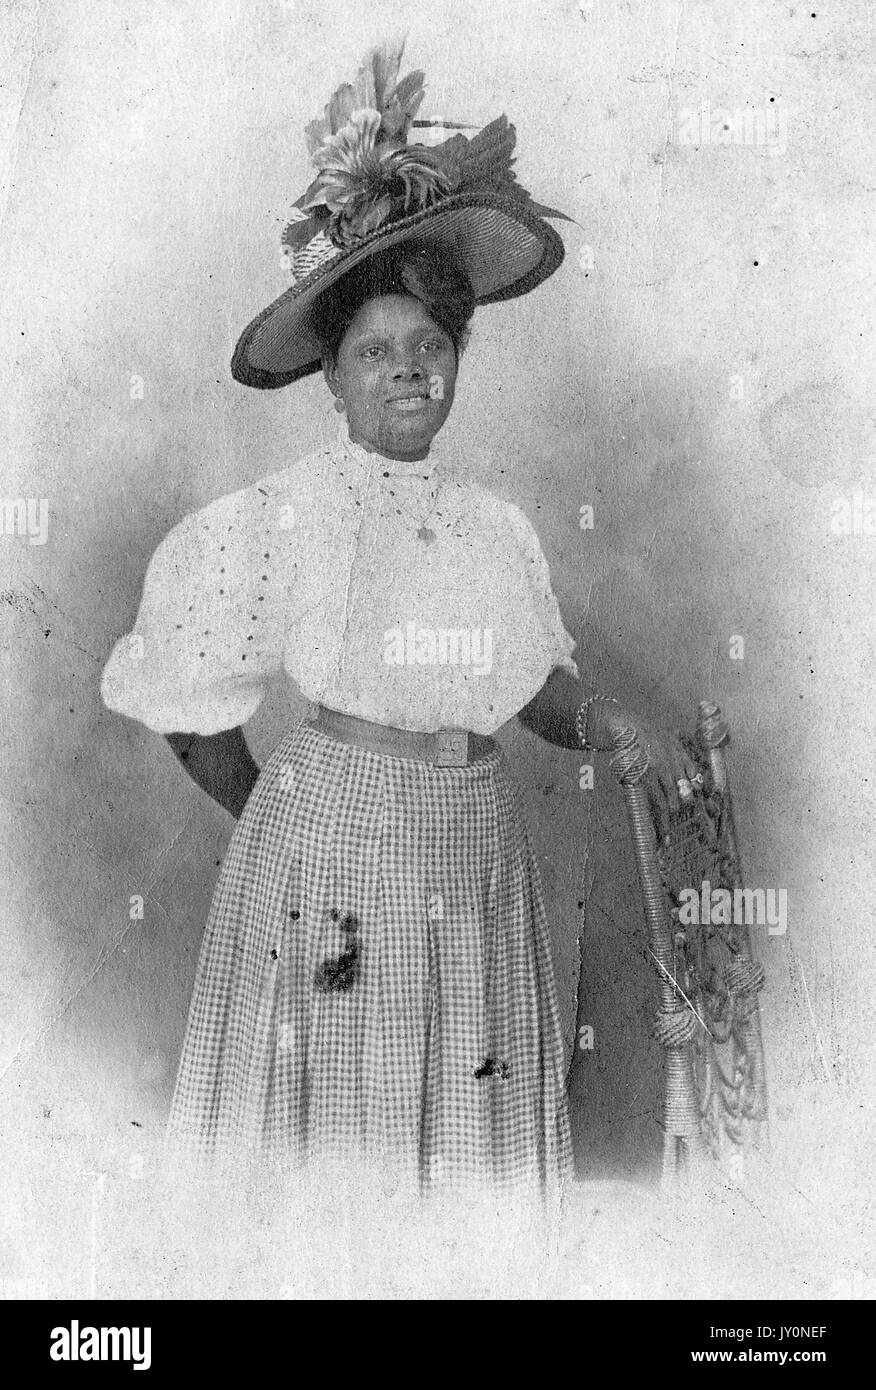 Dreiviertel-Porträt einer afroamerikanischen Frau, die neben einem Stuhl steht, mit einer Hand auf dem Stuhl, mit einem karierten Kleid und einer weißen Bluse, mit einem verzierten Federhut auf dem Kopf, mit einem lächelnden Gesichtsausdruck, 1920. Stockfoto